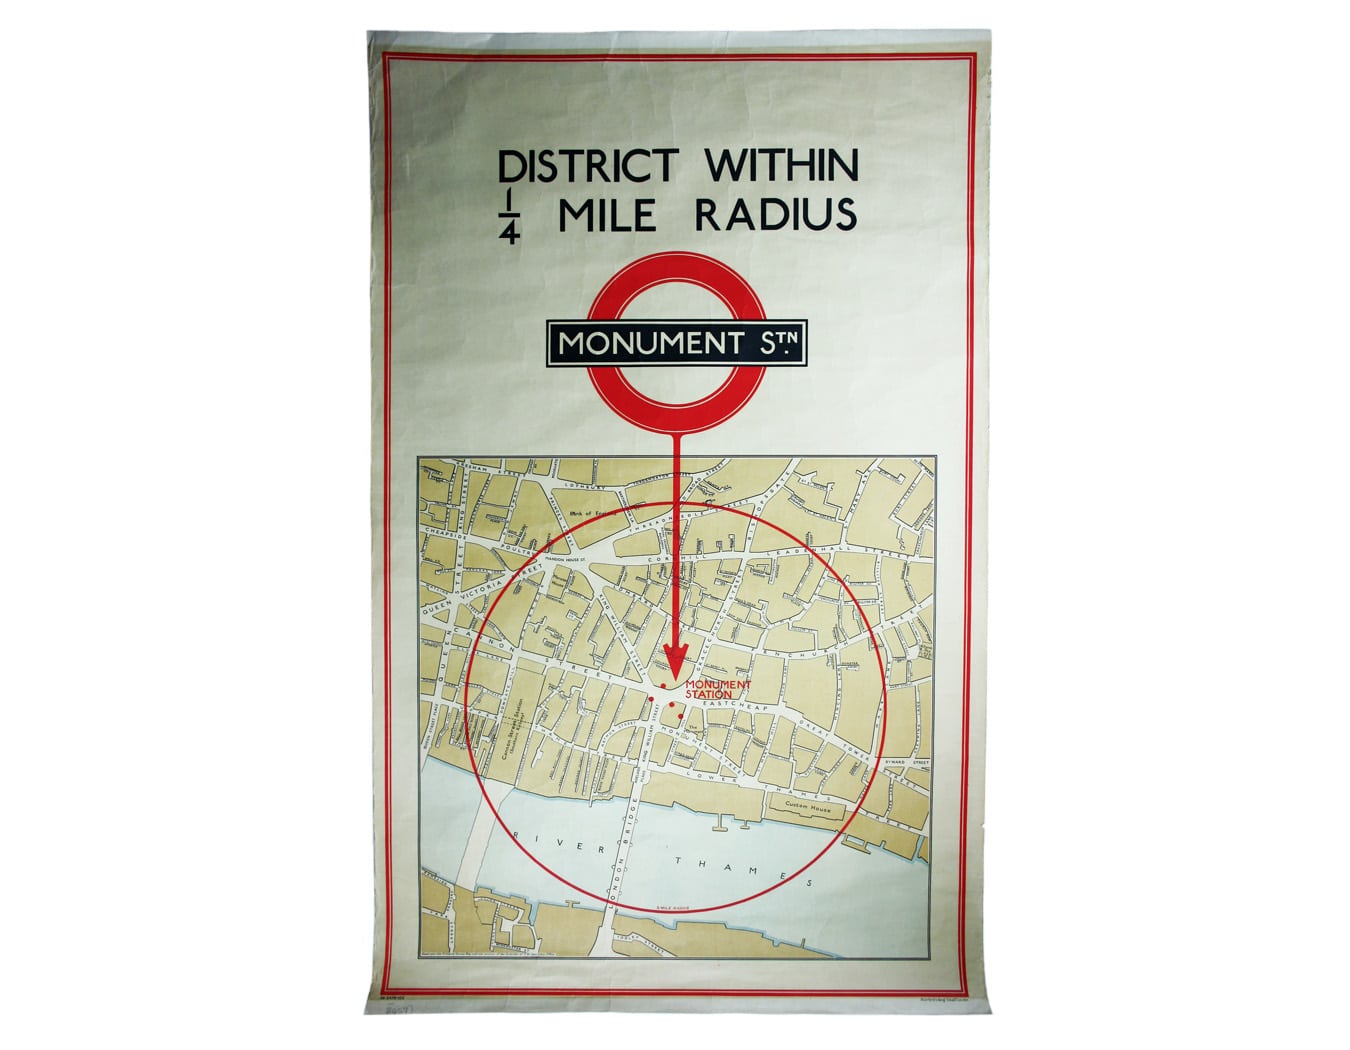 Quarter Mile Radius Map of Monument Station